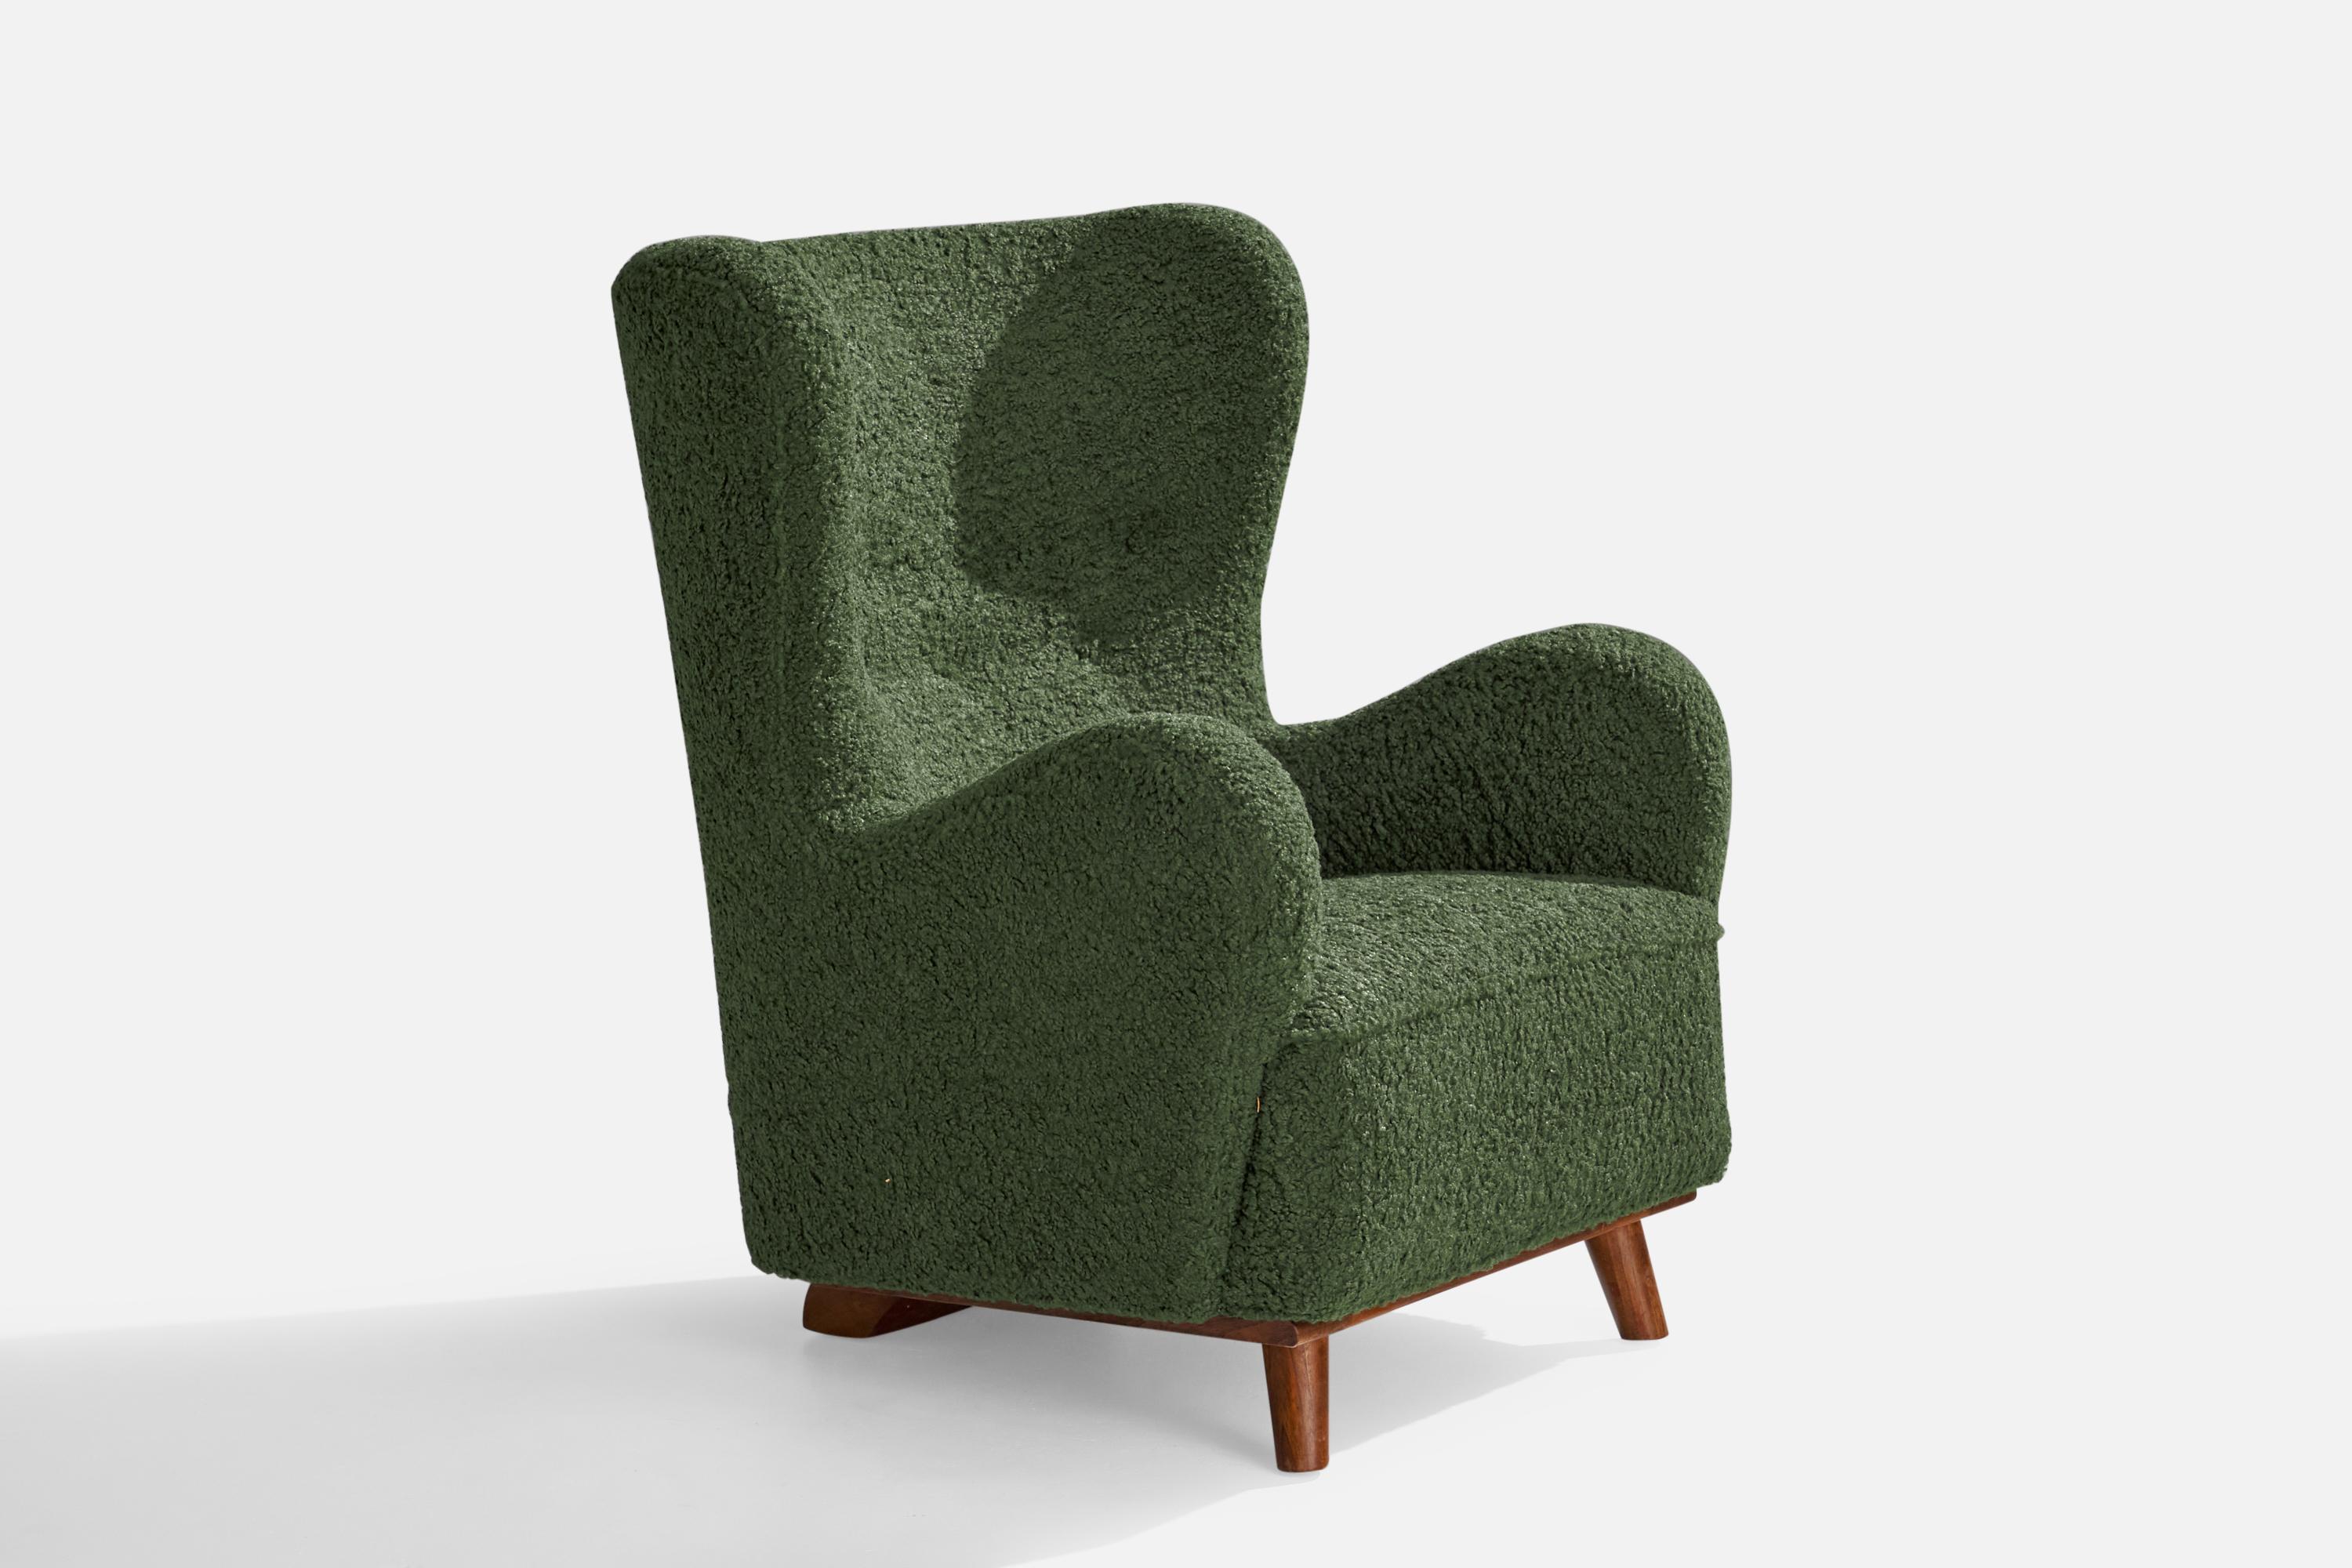 Sessel aus grünem Bouclé-Stoff und gebeizter Buche, entworfen und hergestellt in Dänemark, um 1930.

Sitzhöhe 16,5